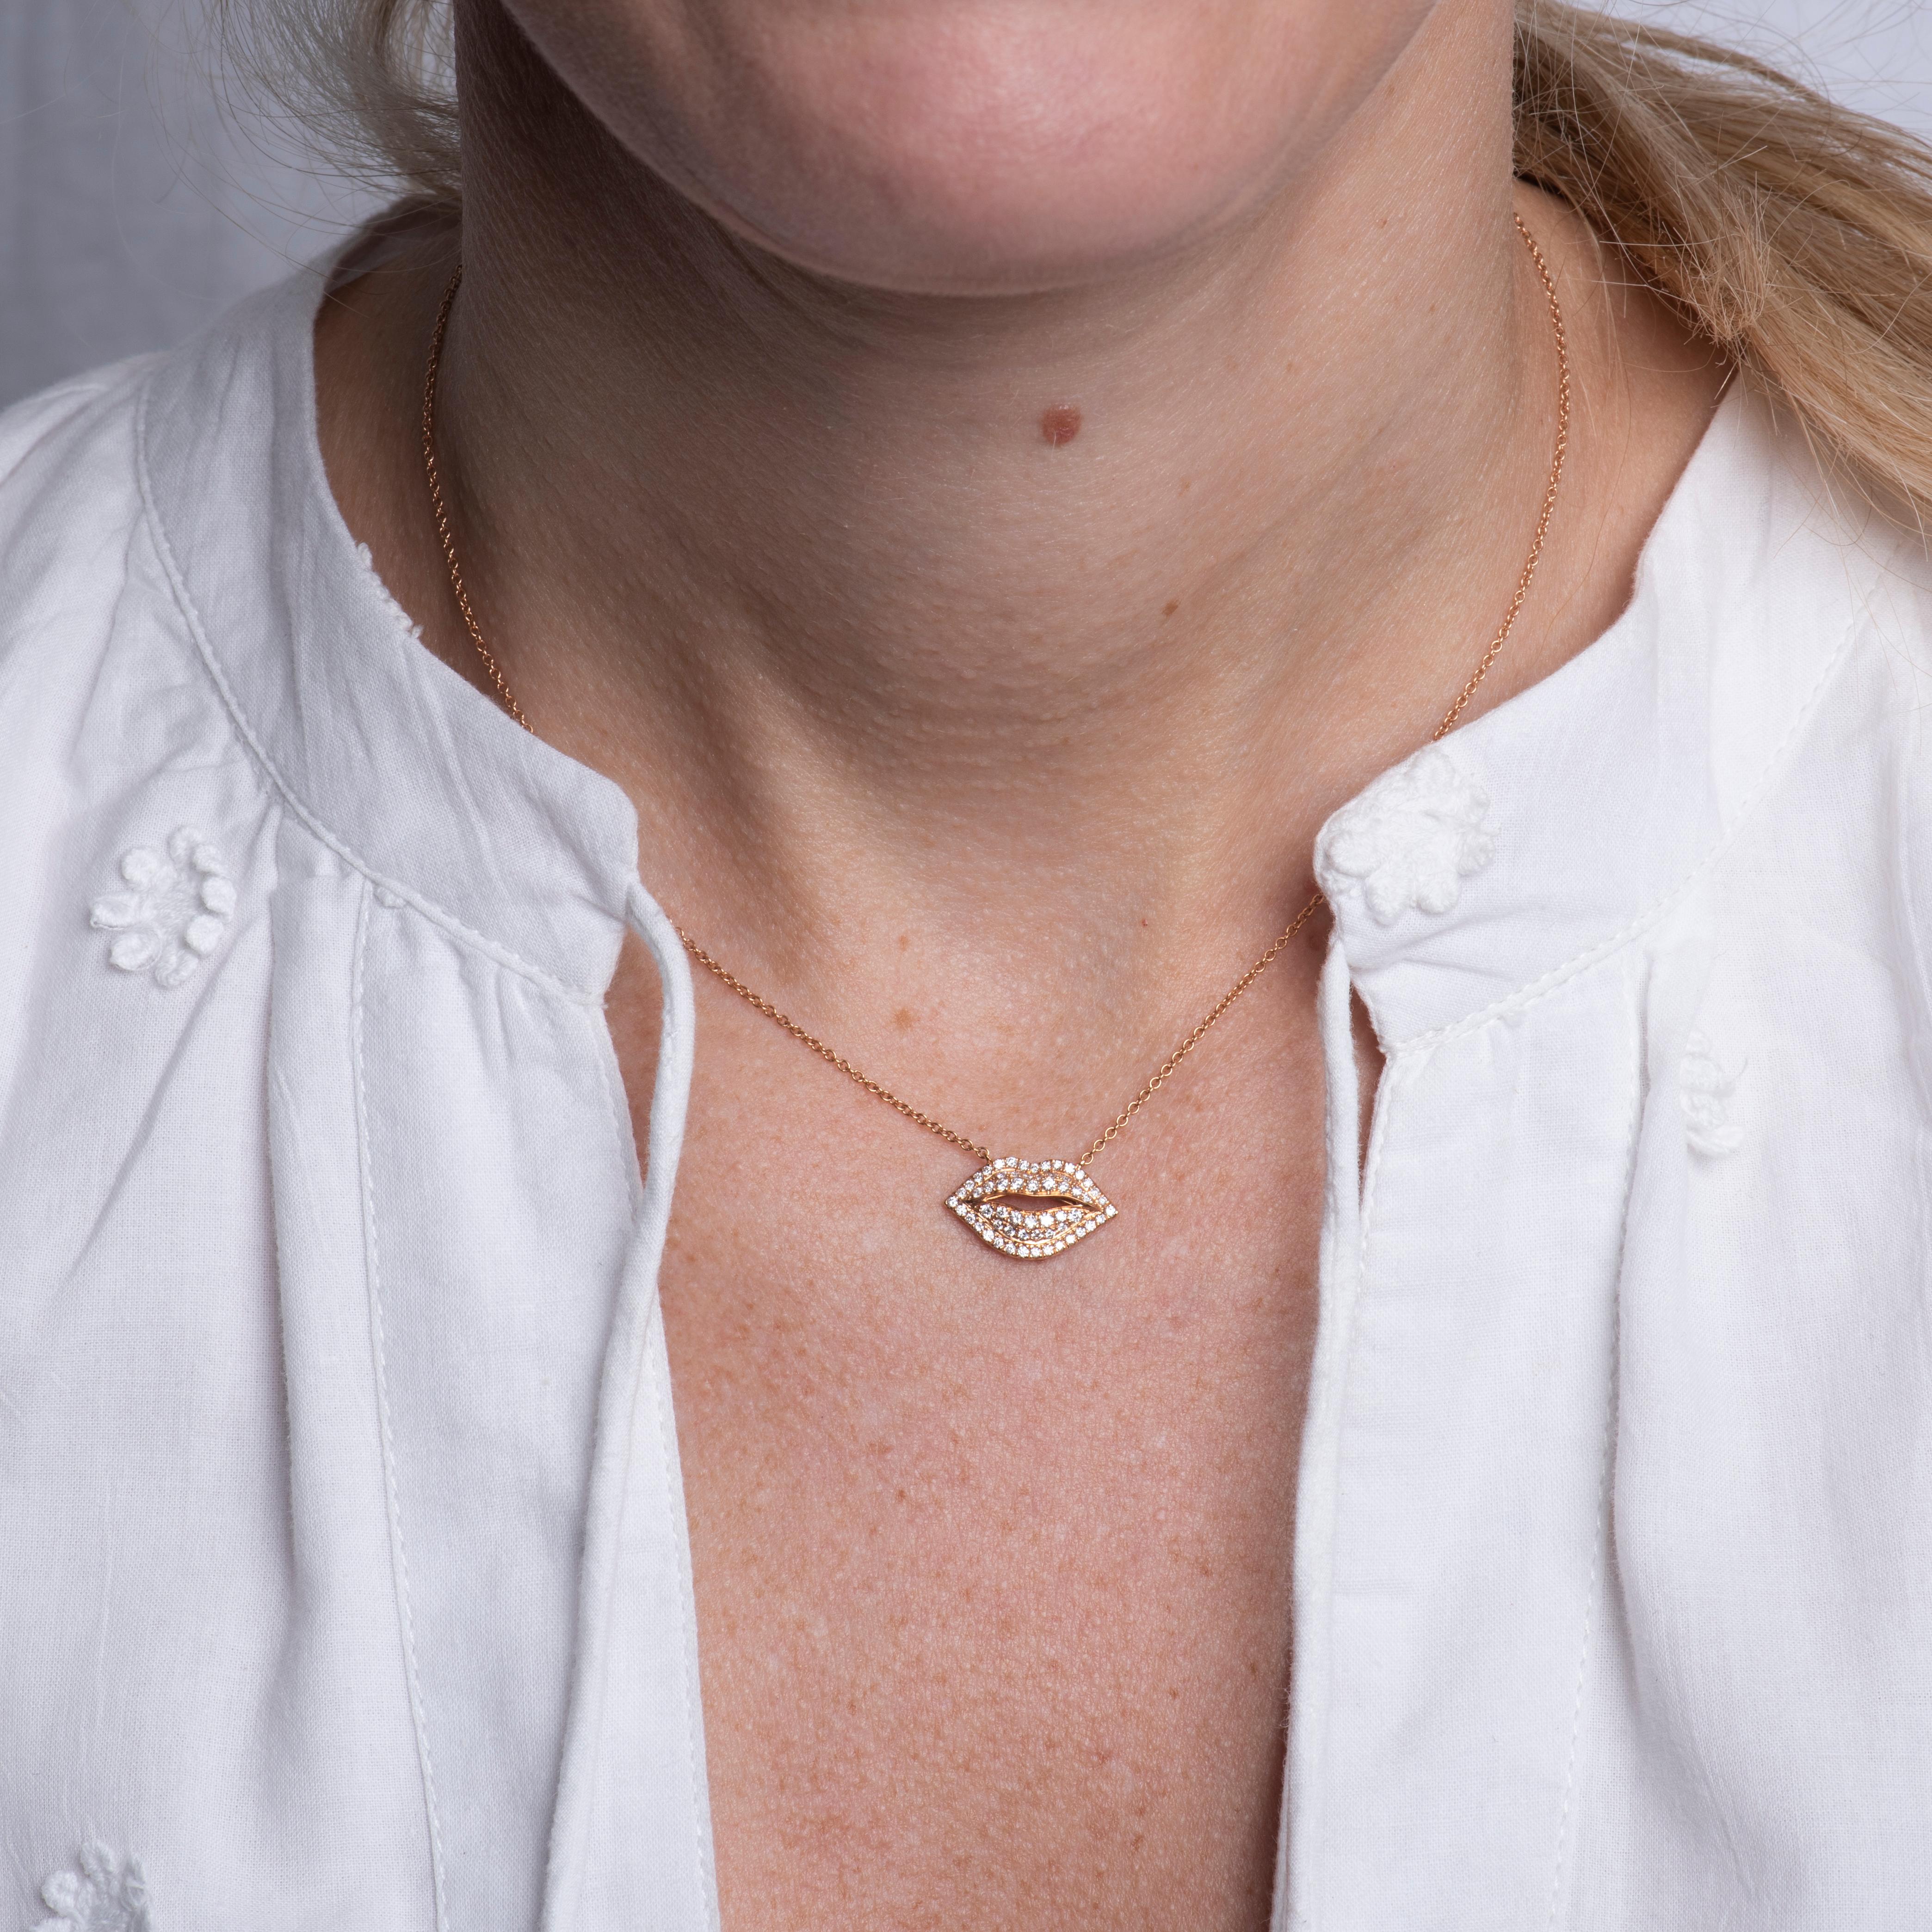 Ce collier pendentif unique présente un ensemble de lèvres serties de diamants ronds d'un poids total de 0,35 carat. Il est serti en or rose 18 carats sur une chaîne réglable en or rose 18 carats. Fermeture avec un fermoir en forme de homard. A